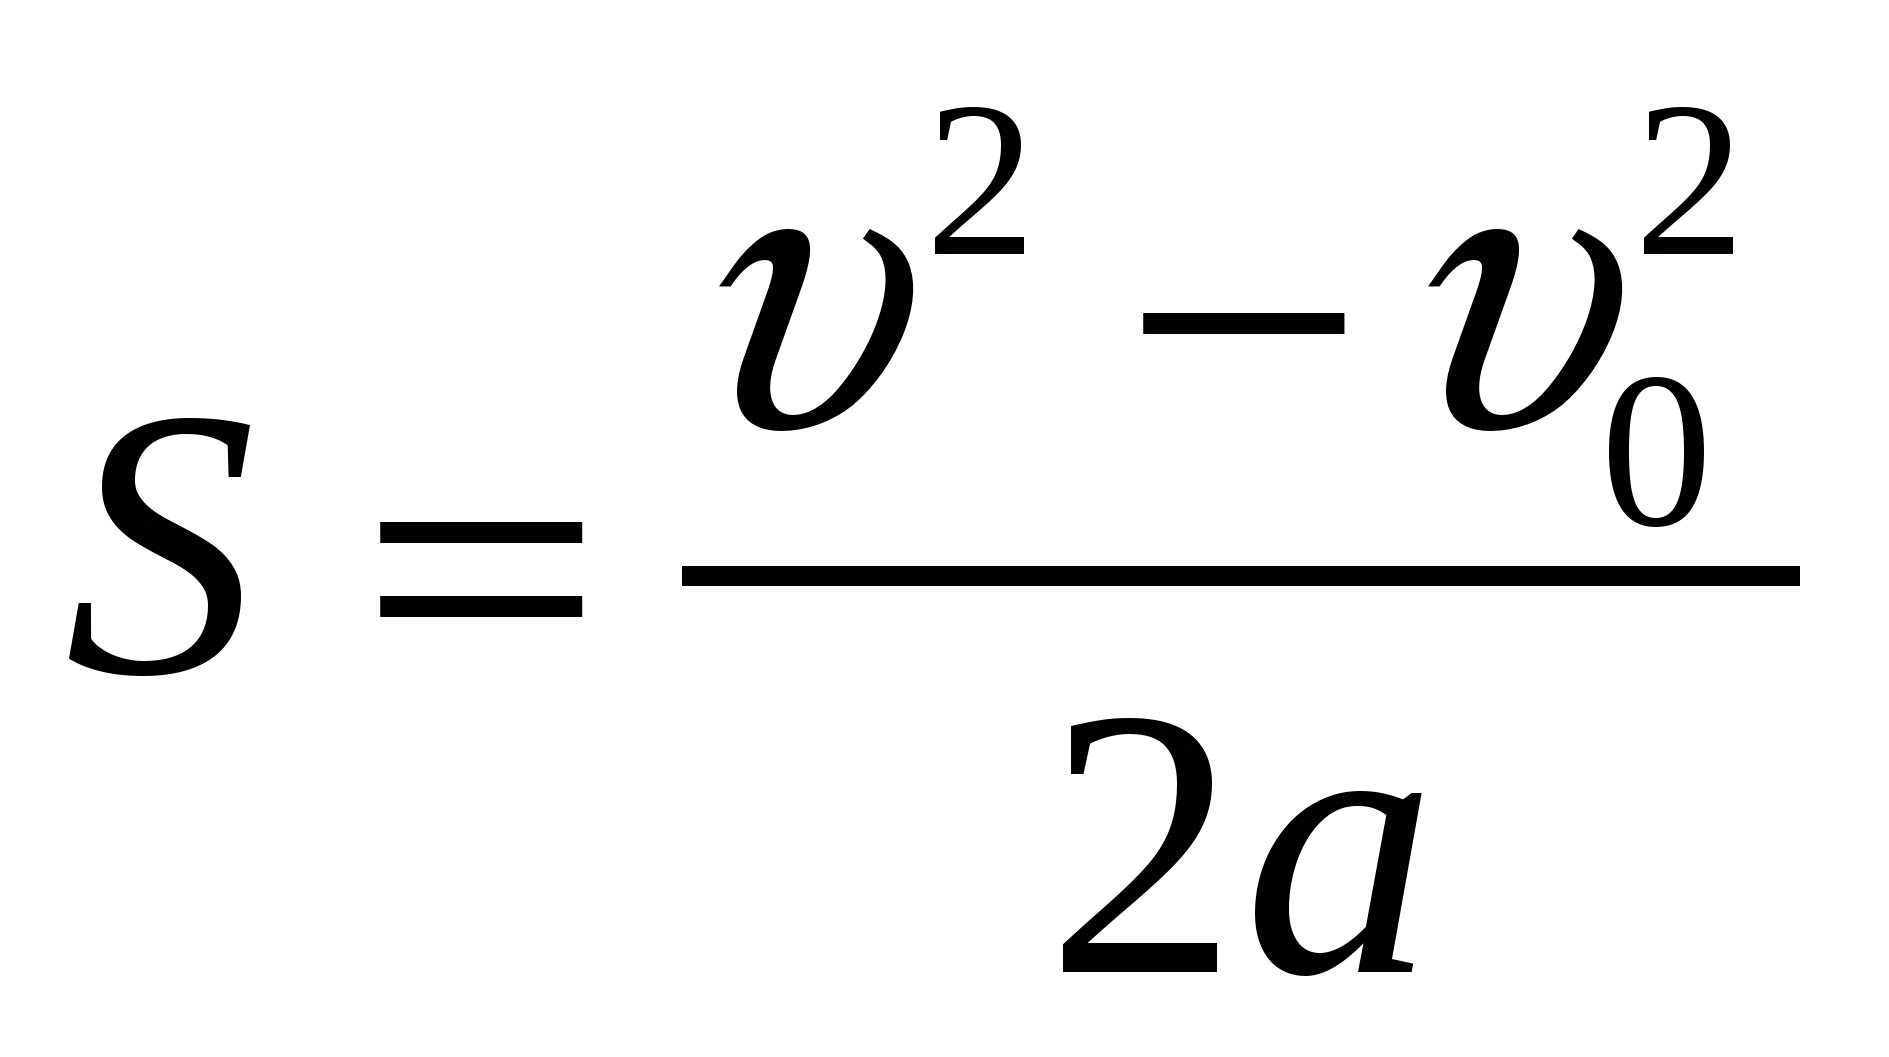 Формула av. S v2 v02/2a. S V 2-v0 2/2a. V2-v2/2a. Безвременная формула перемещения.